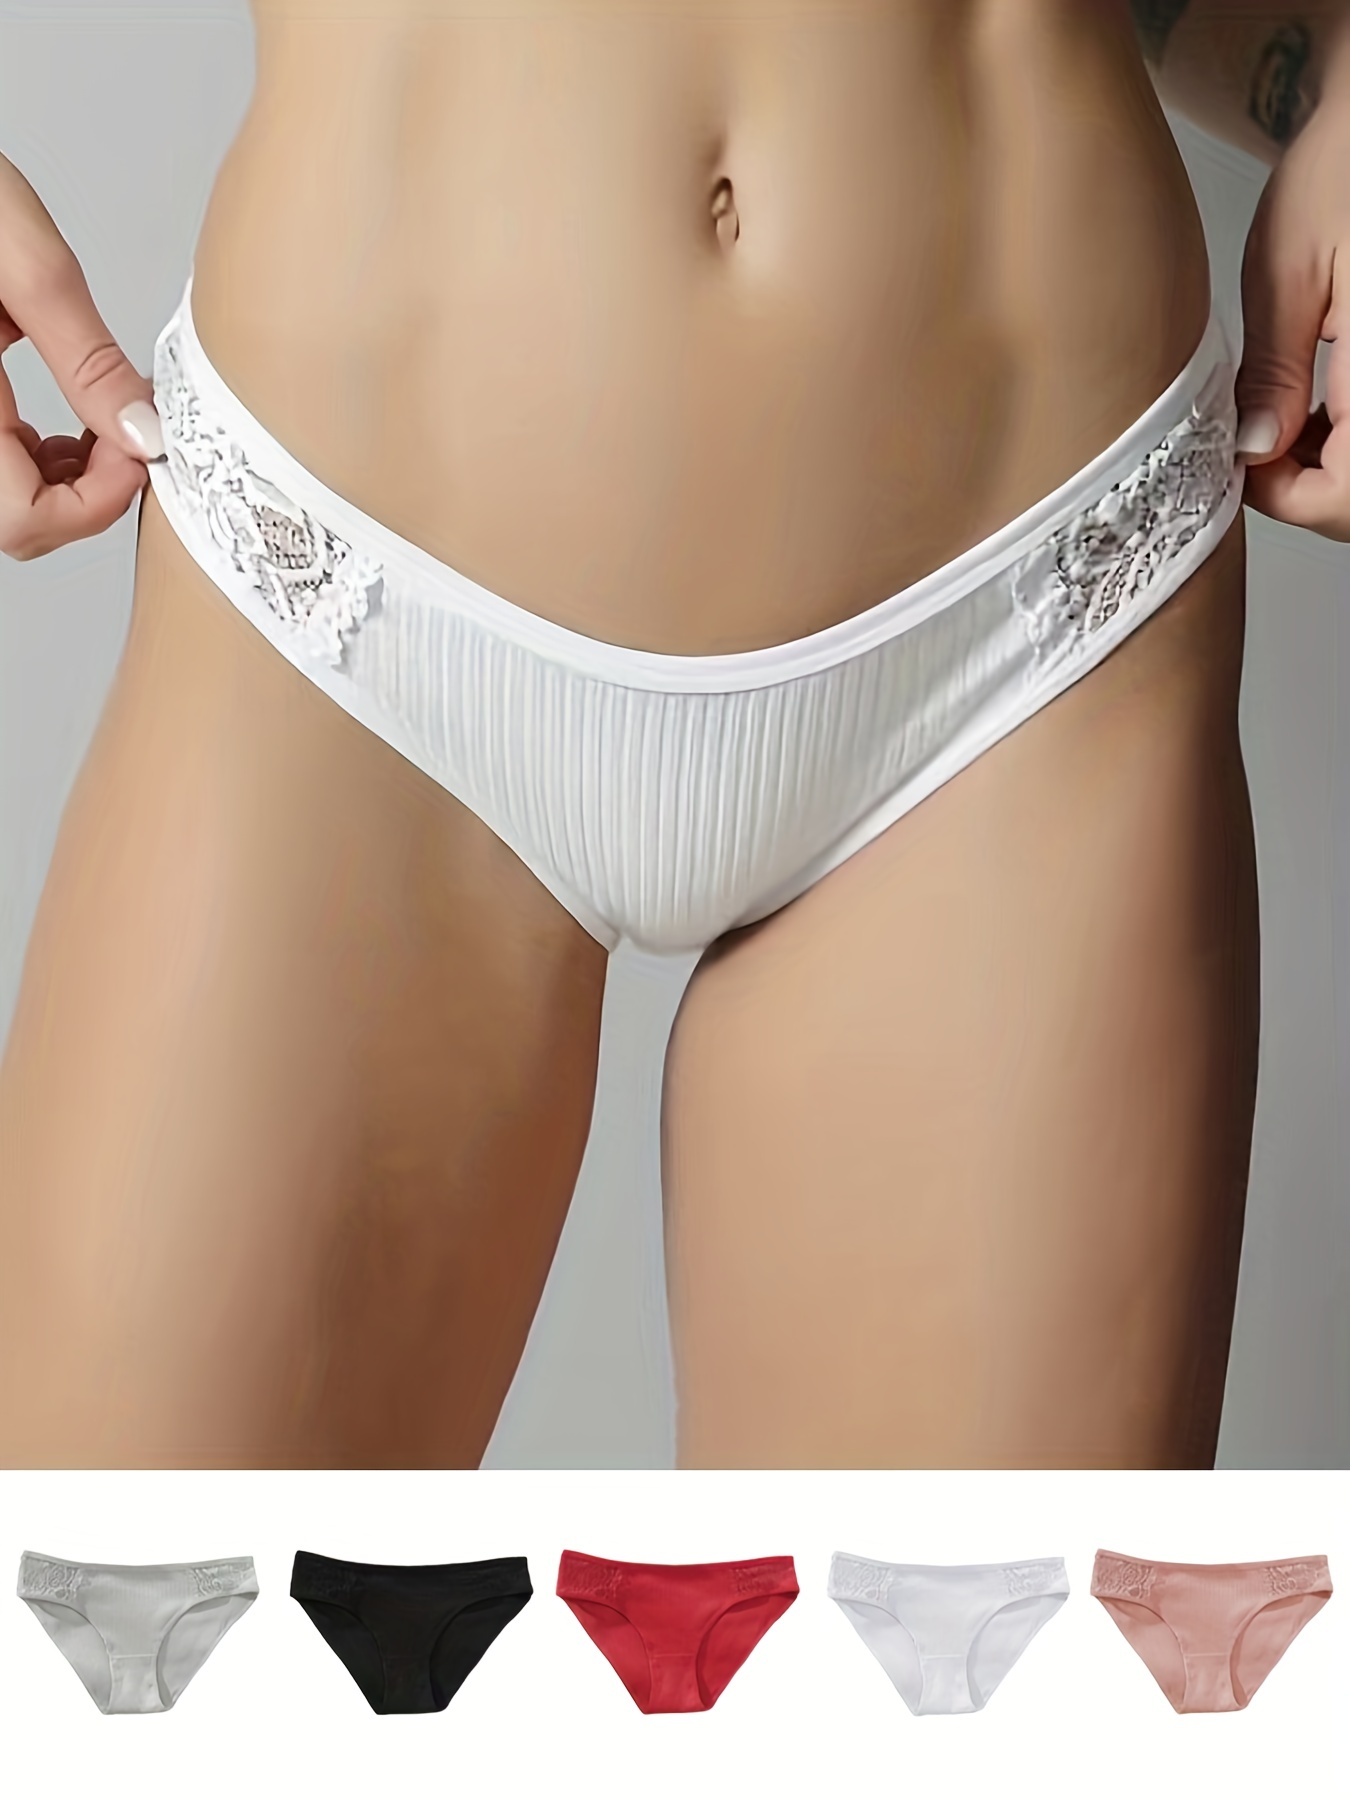 Women's Lingerie Underwear 5pcs Contrast Lace Ribbed Briefs